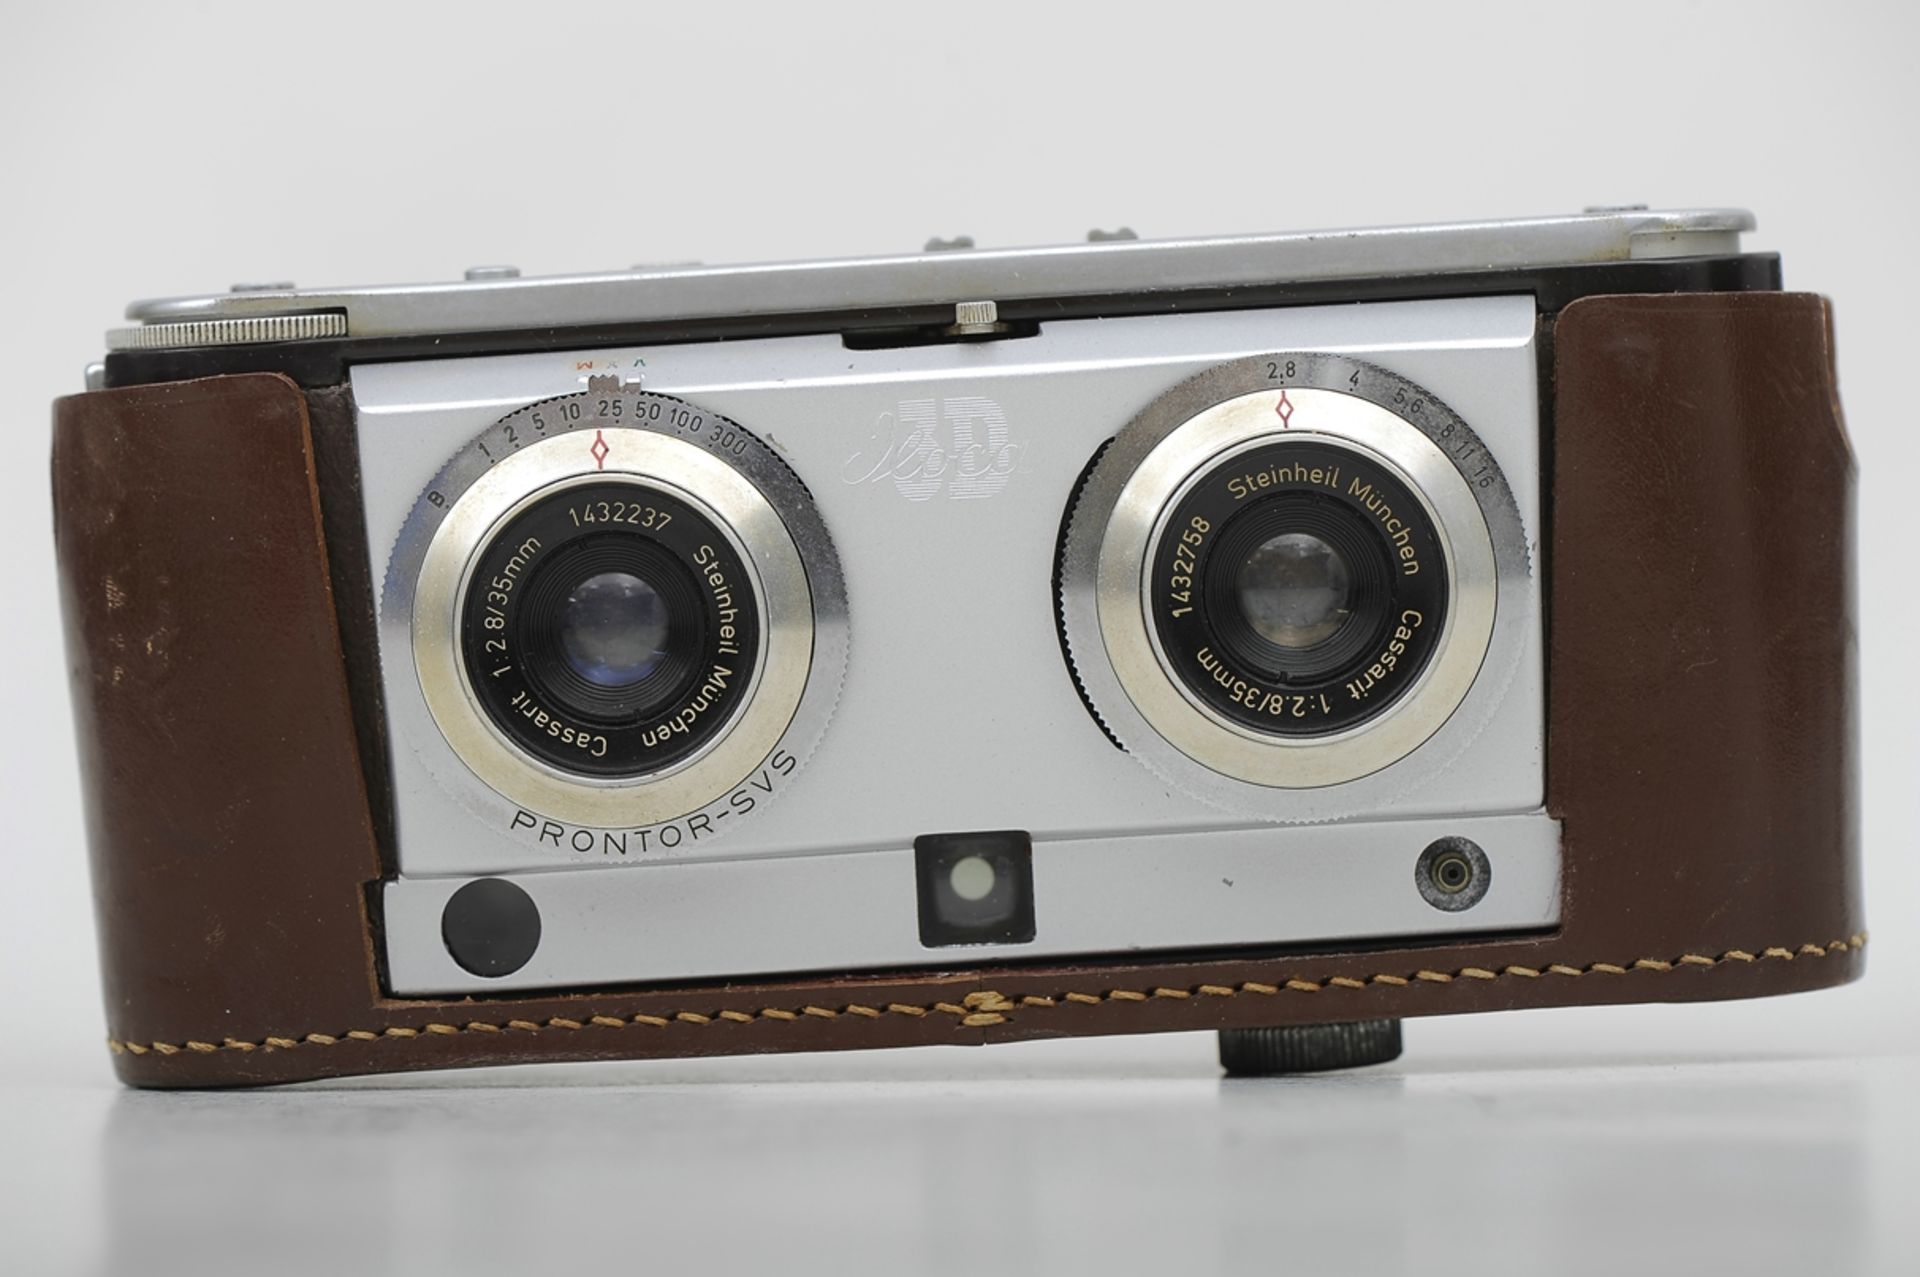 "ILOCA 3D" Stereo Rapid Kamera mit Steinheil Cassait-Objektiven 1:2,8/35 mm, No. 1432237 und 143275